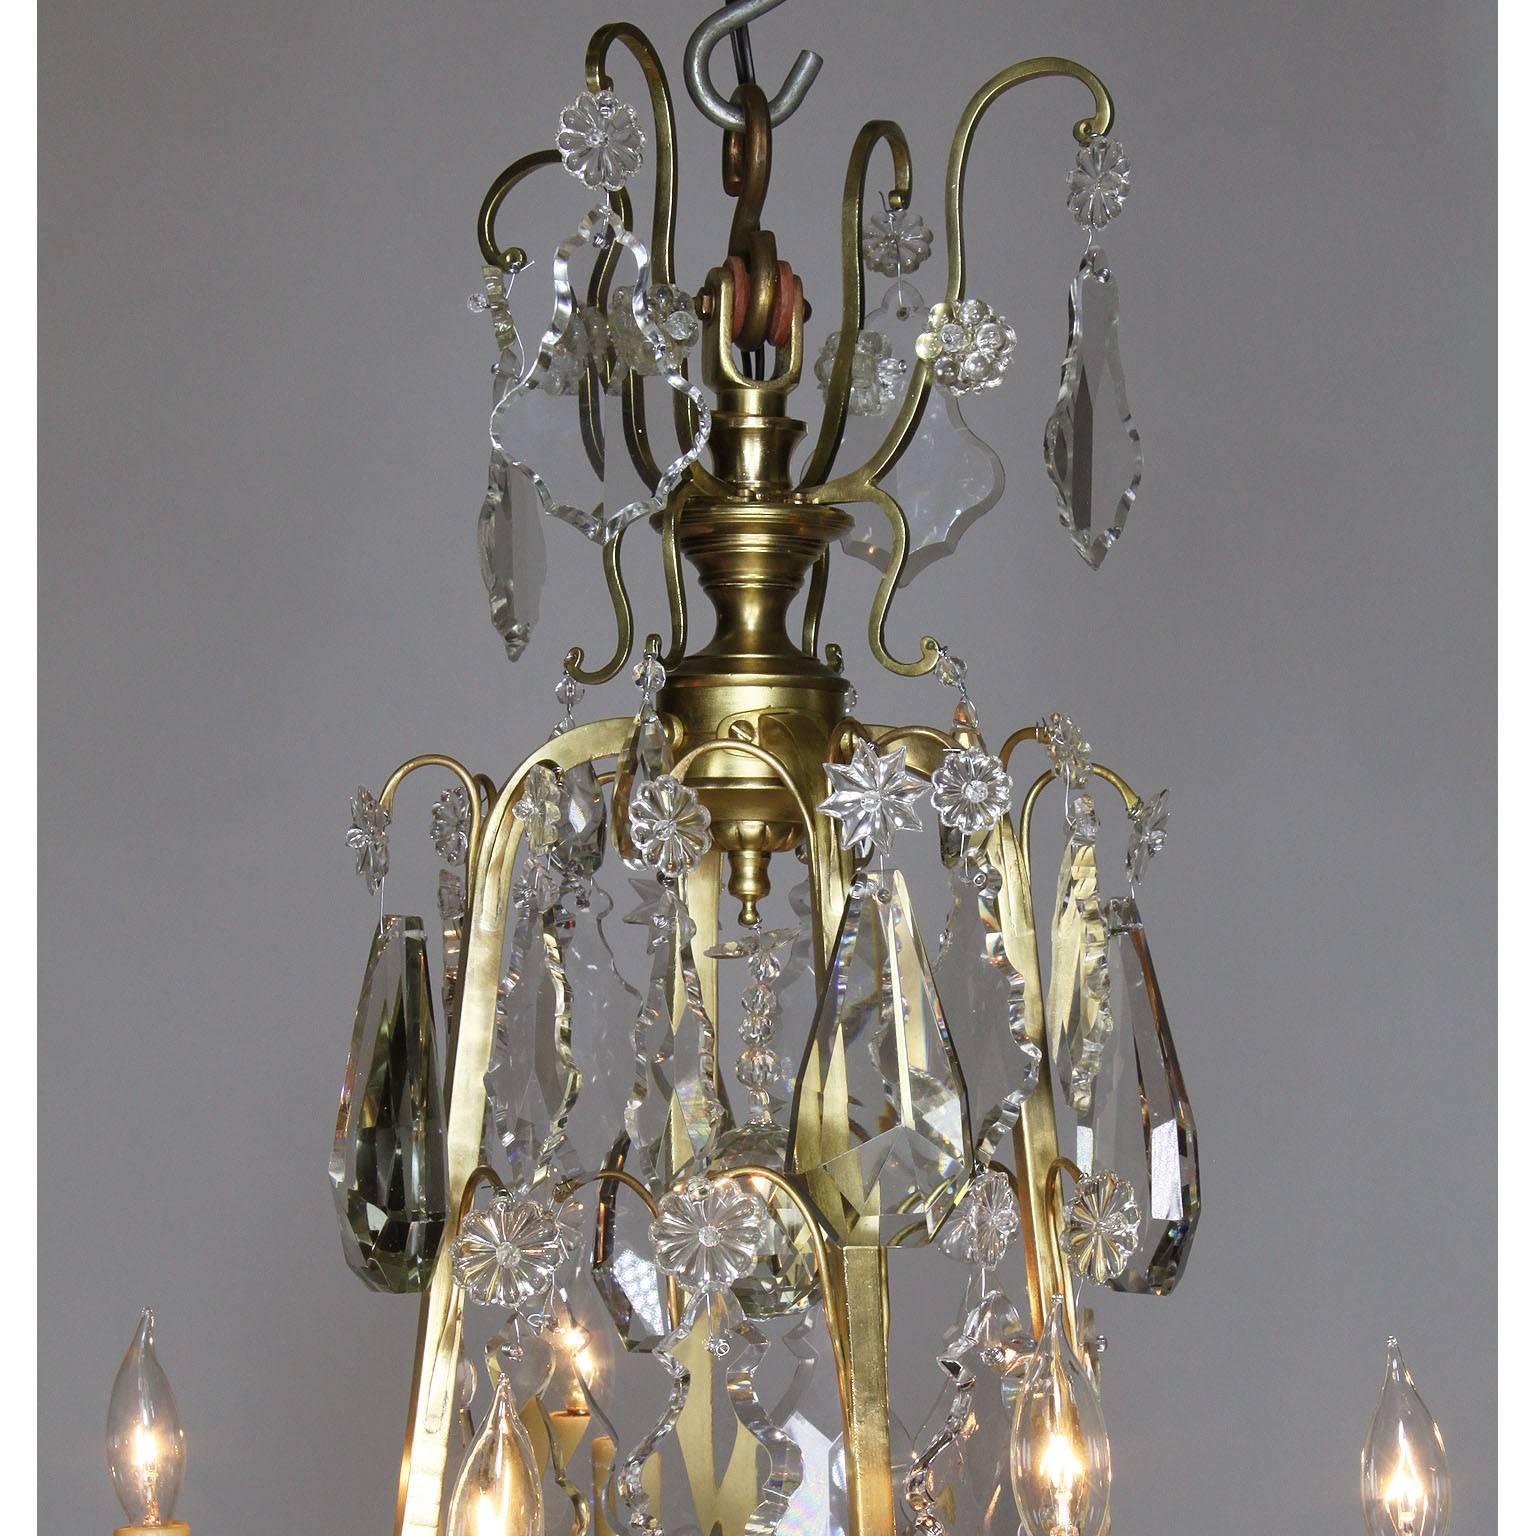 Lustre à neuf lumières en bronze doré et verre taillé de style Louis XV. Le corps allongé avec des pendentifs en verre taillé (cristal) surmontés de huit bras de bougie et d'un abat-jour central en verre dépoli, vers 1900.

Mesures : Hauteur : 44